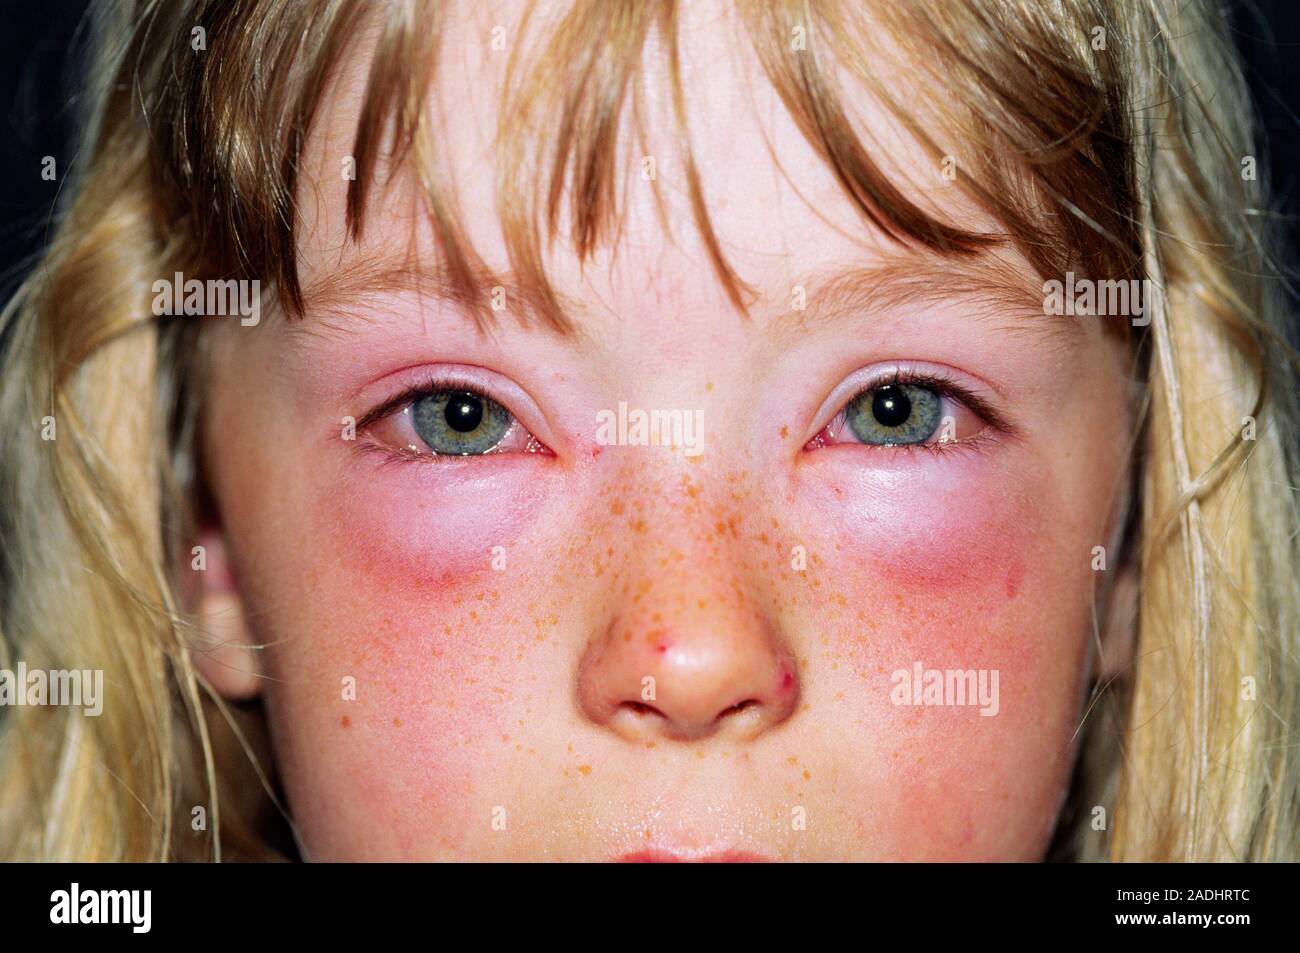 Geschwollene Augen eines 6-jährigen Mädchens mit einer unbekannten Allergie.  Periorbitale Ödeme (um die augenhöhle) Flüssigkeit Schwellung (Ödem) von  einer allergischen Rea führen kann Stockfotografie - Alamy